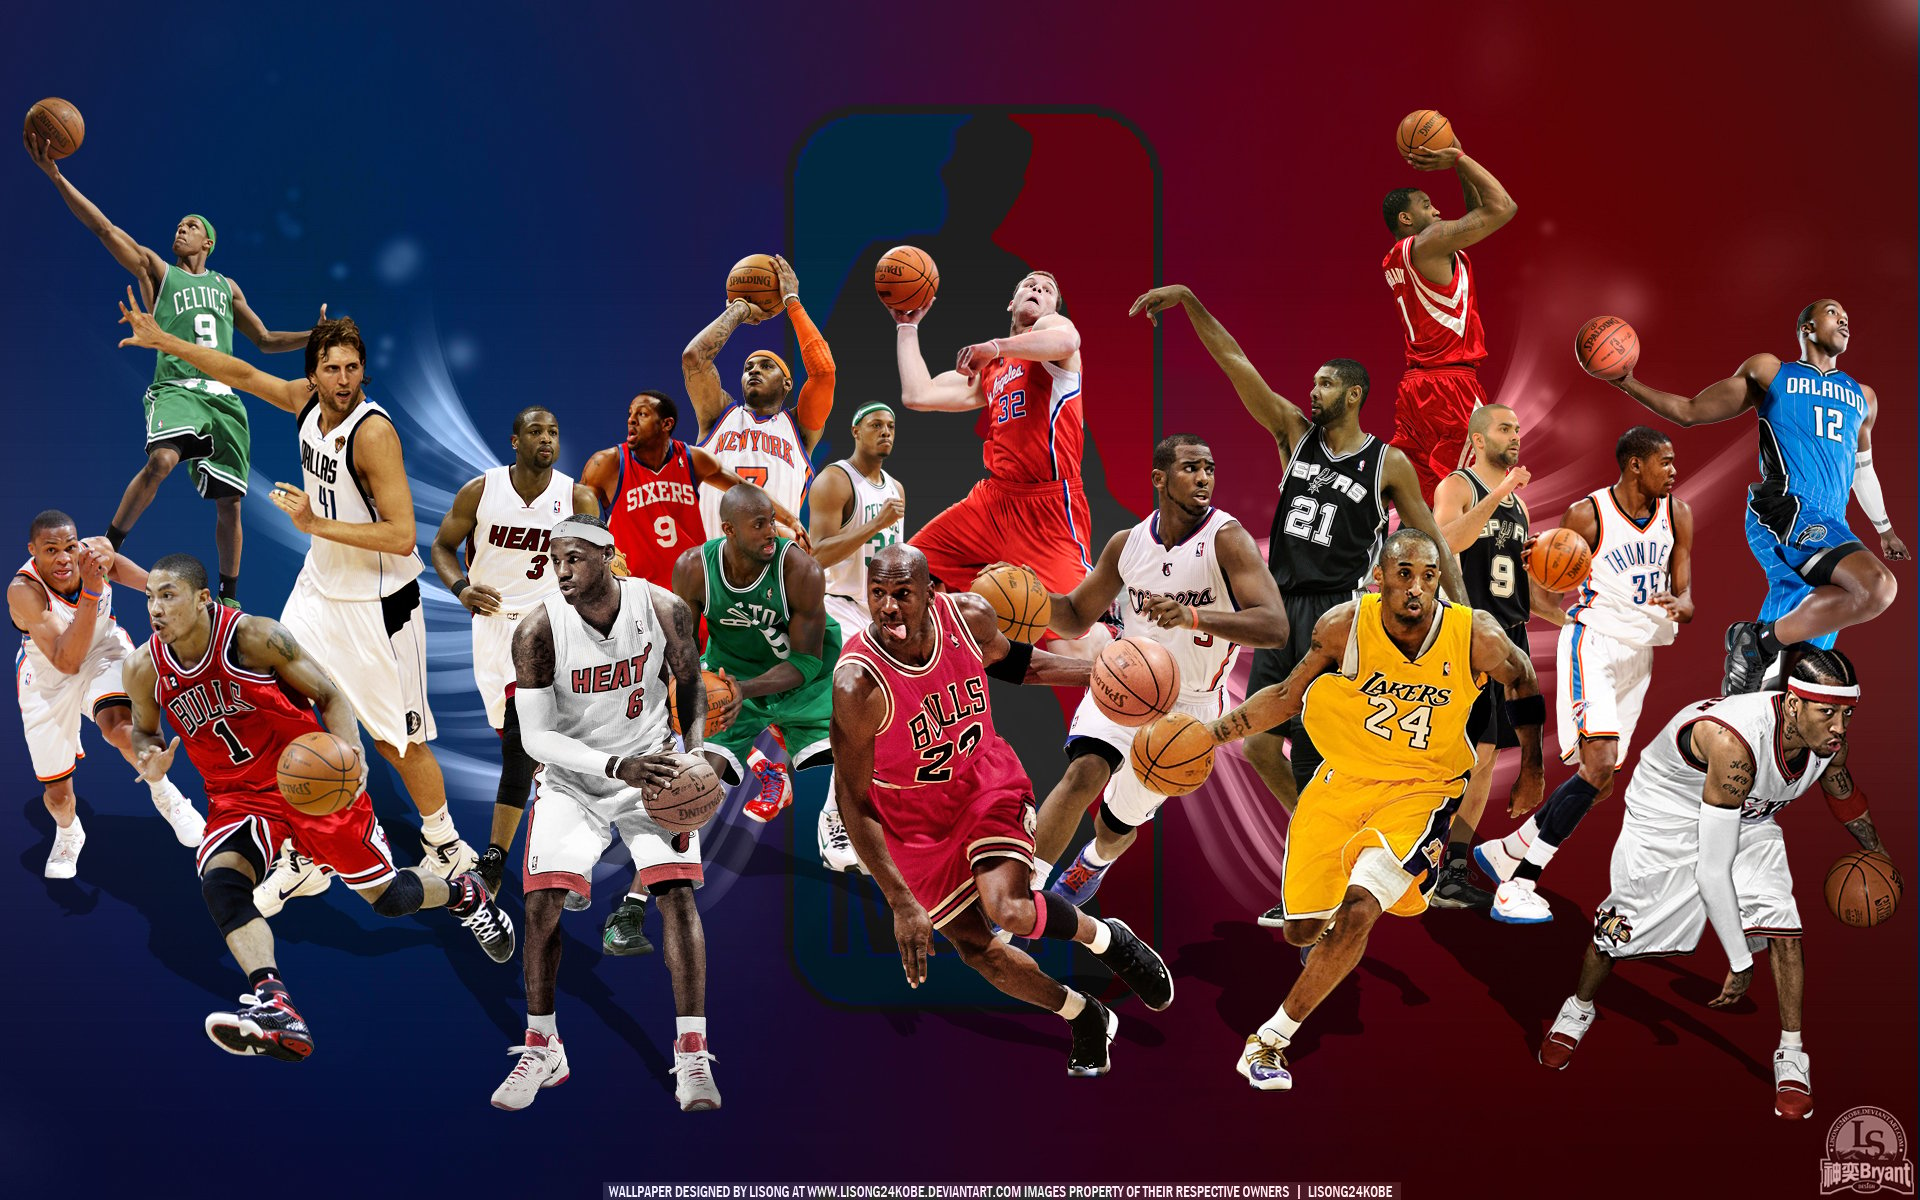 Cool NBA Wallpapers for iPhone - WallpaperSafari